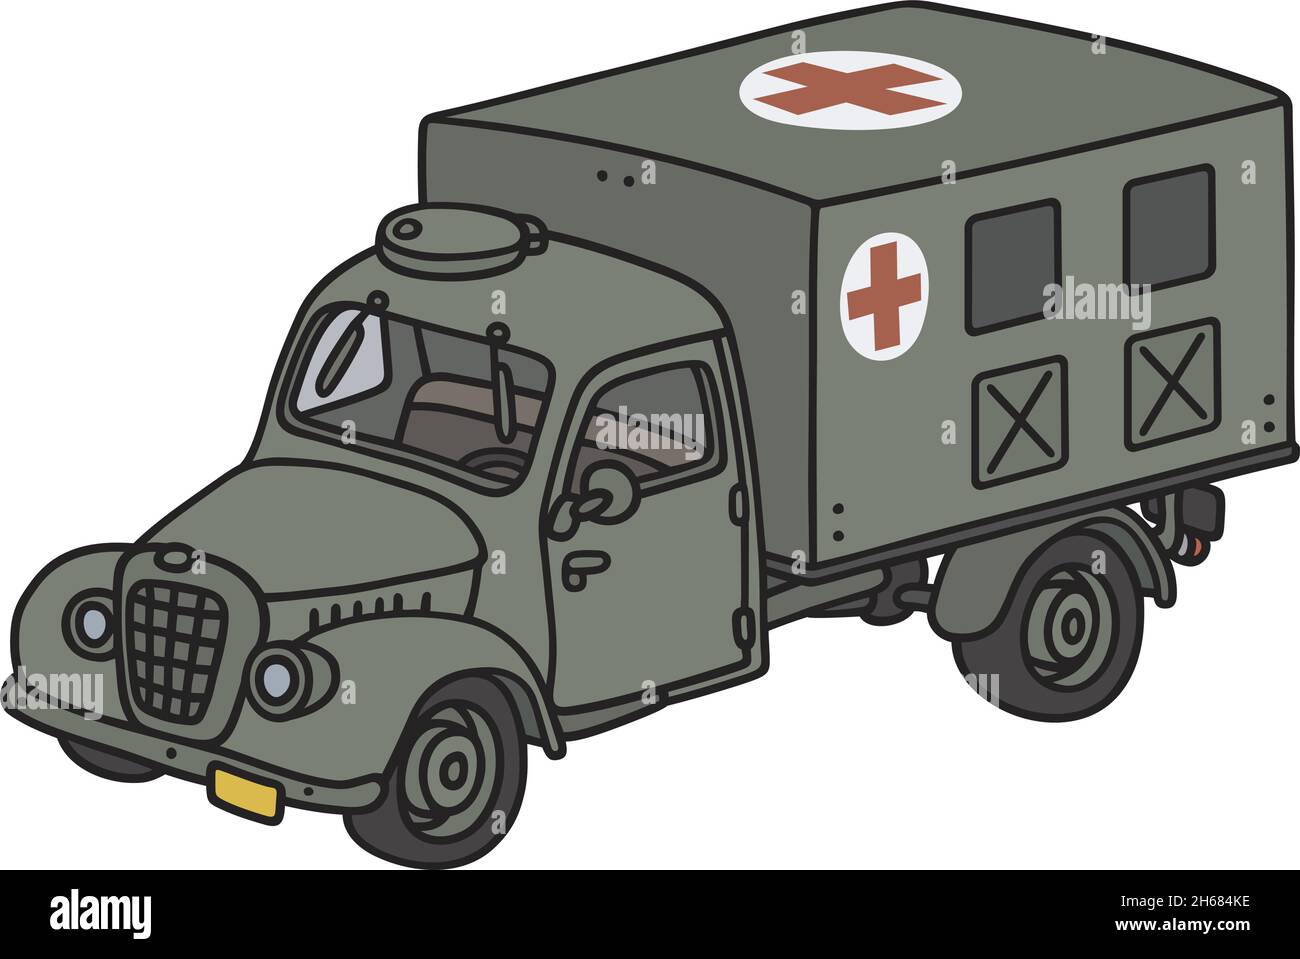 Il disegno a mano vettorizzato di un'ambulanza militare retrò Illustrazione Vettoriale